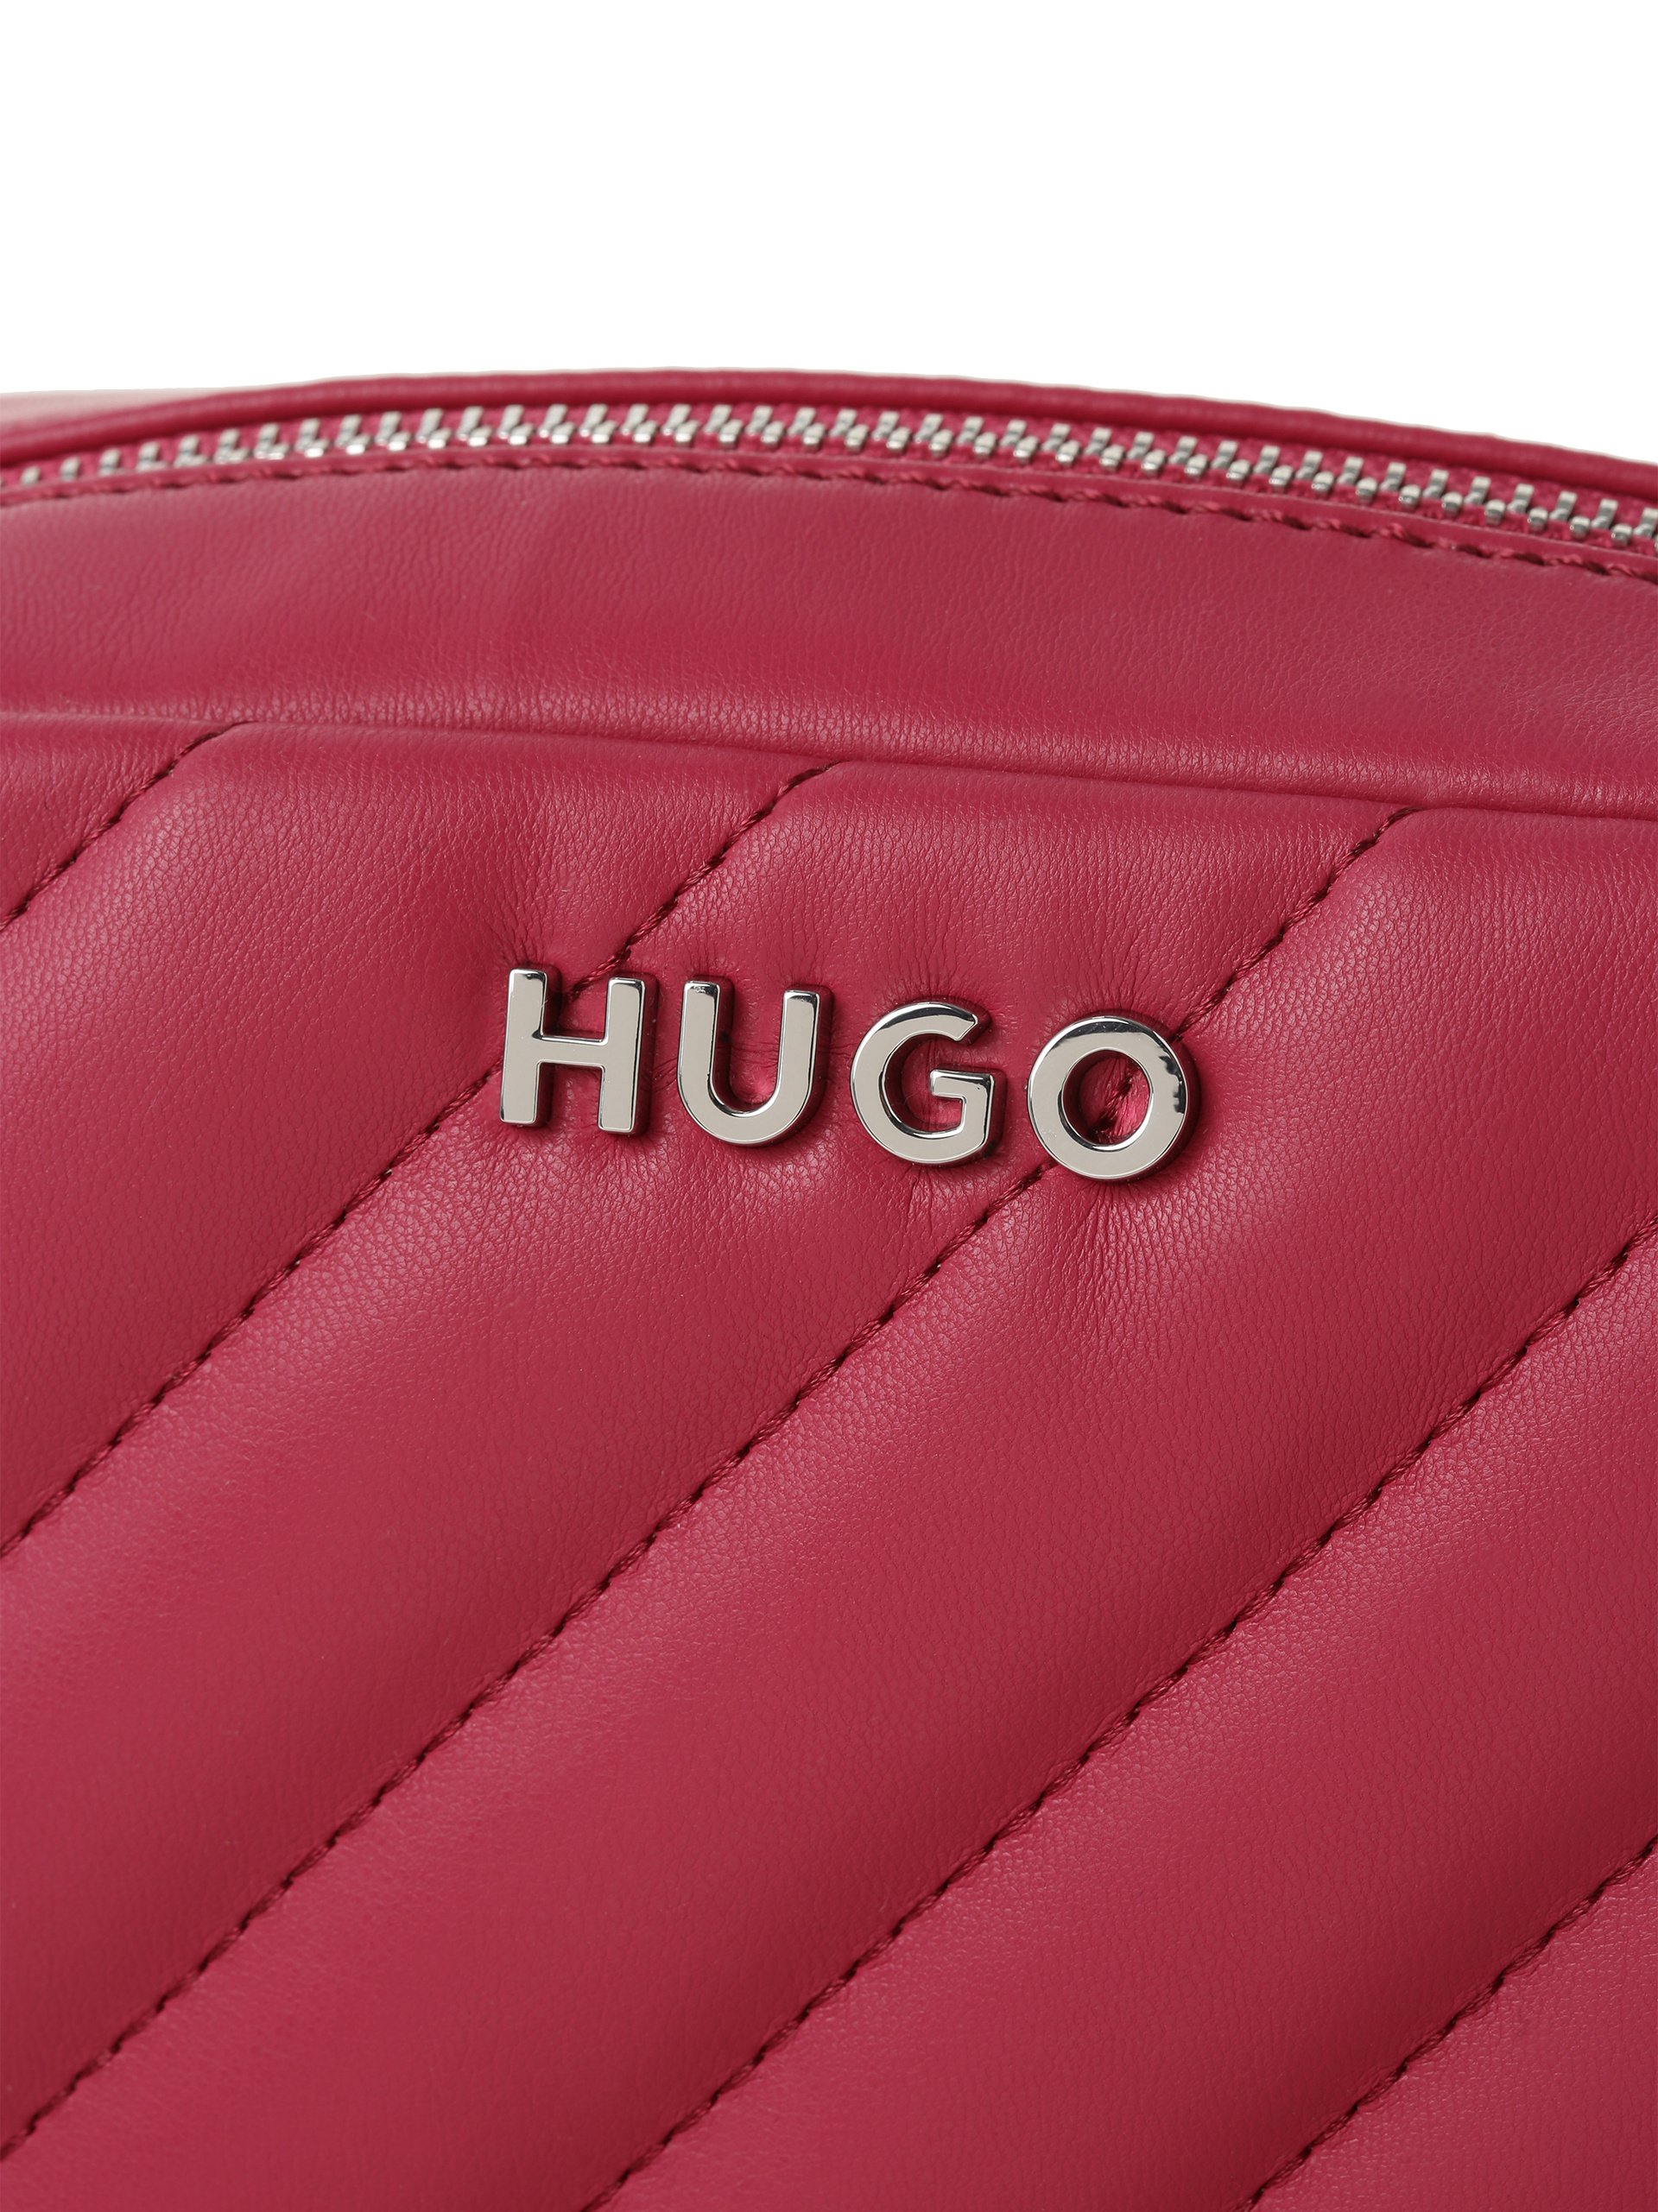 Lizzie online HUGO kaufen - Damen Handtasche